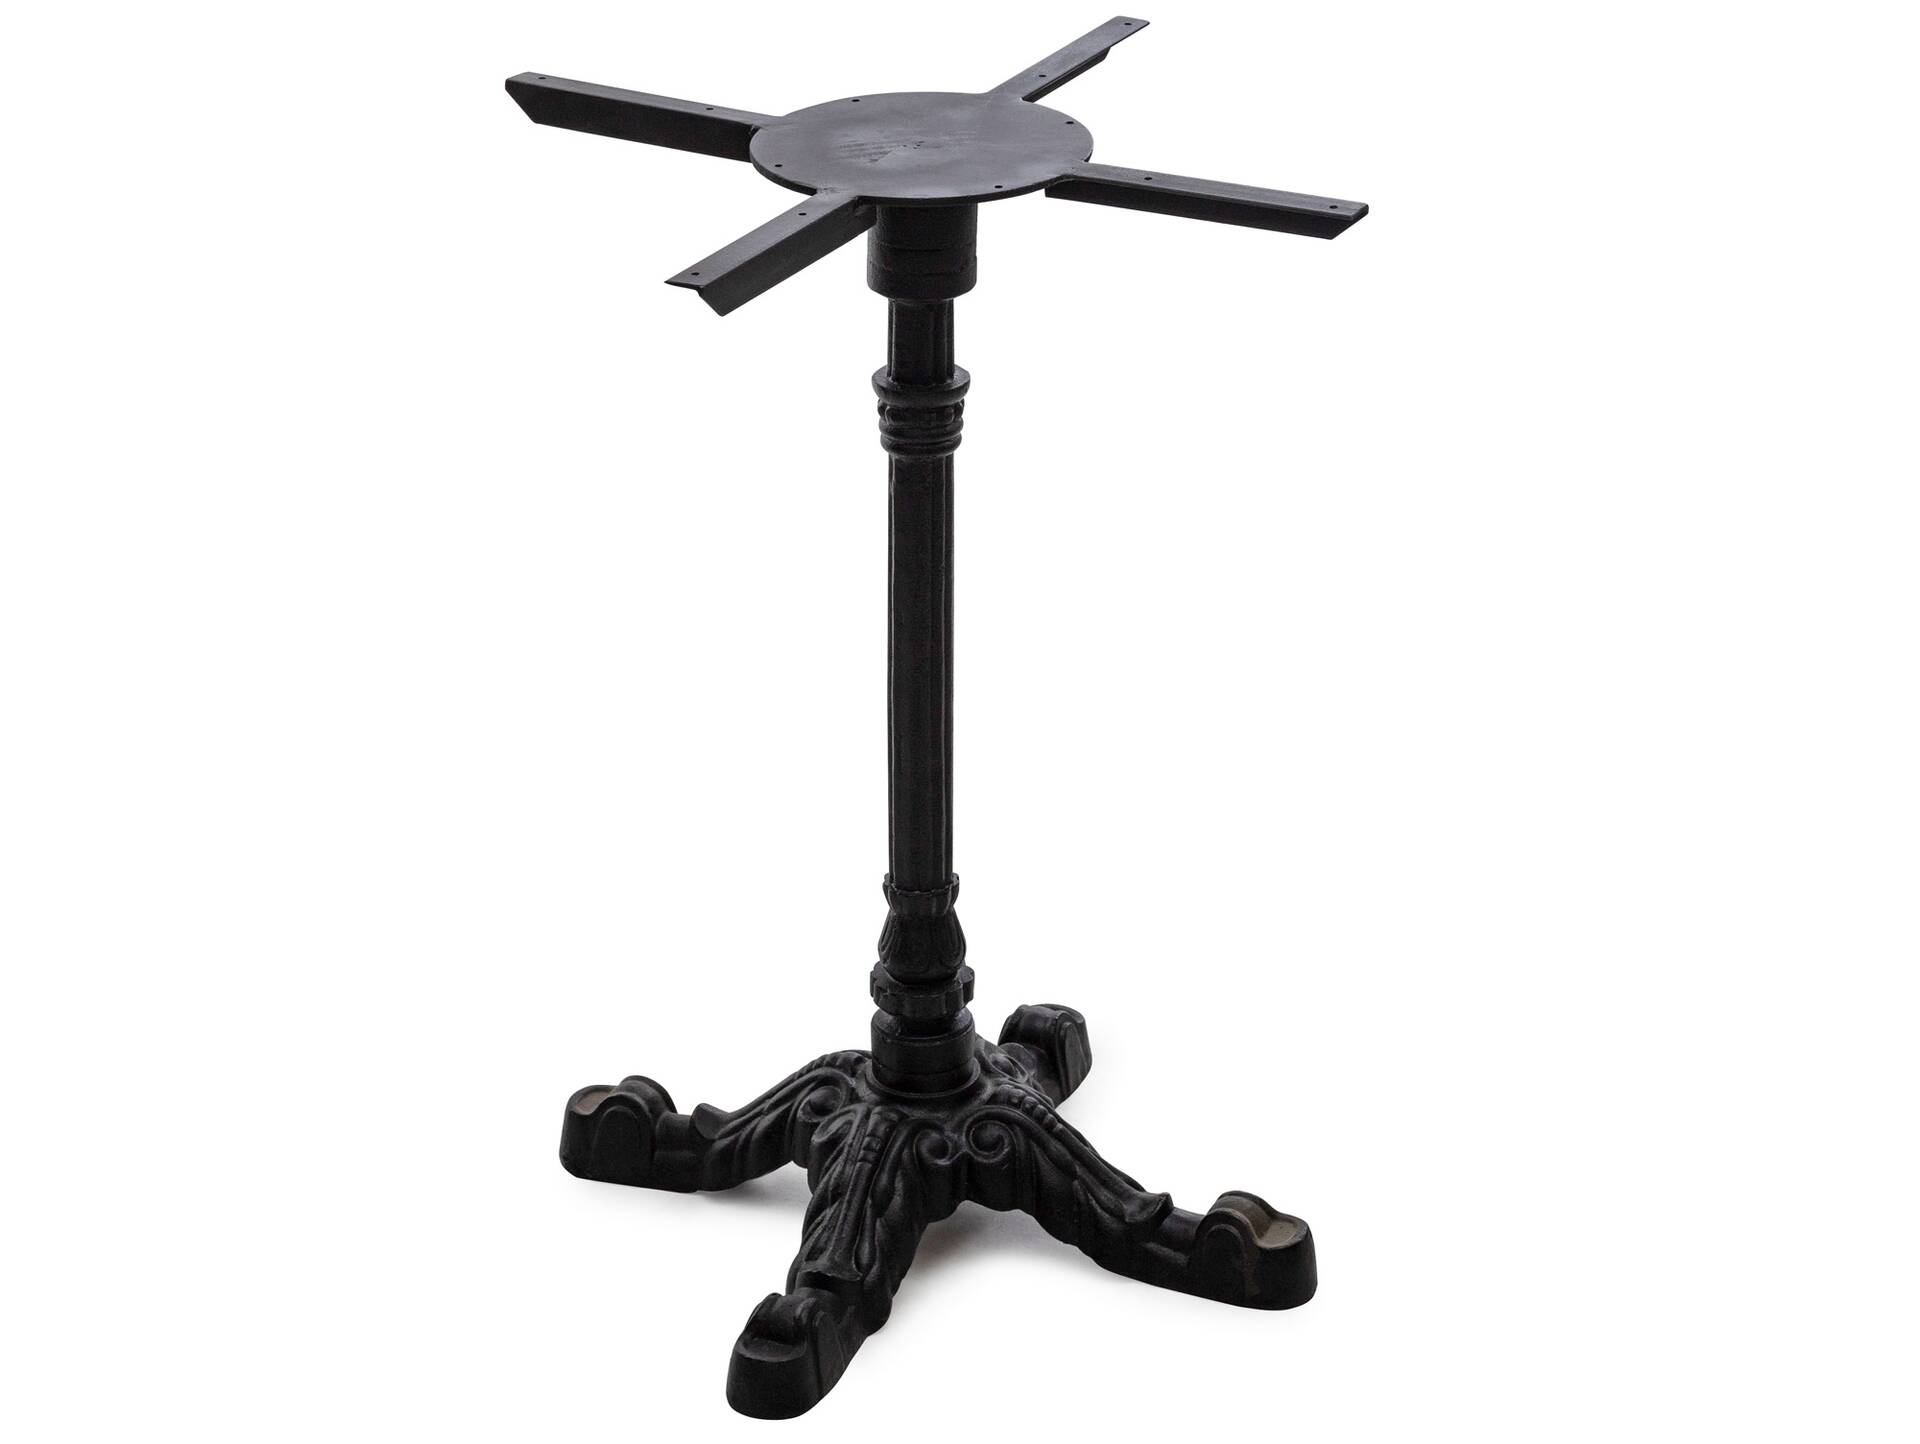 Tischgestell für Esstisch, Material Metall, schwarz lackiert, Höhe: 73 cm 